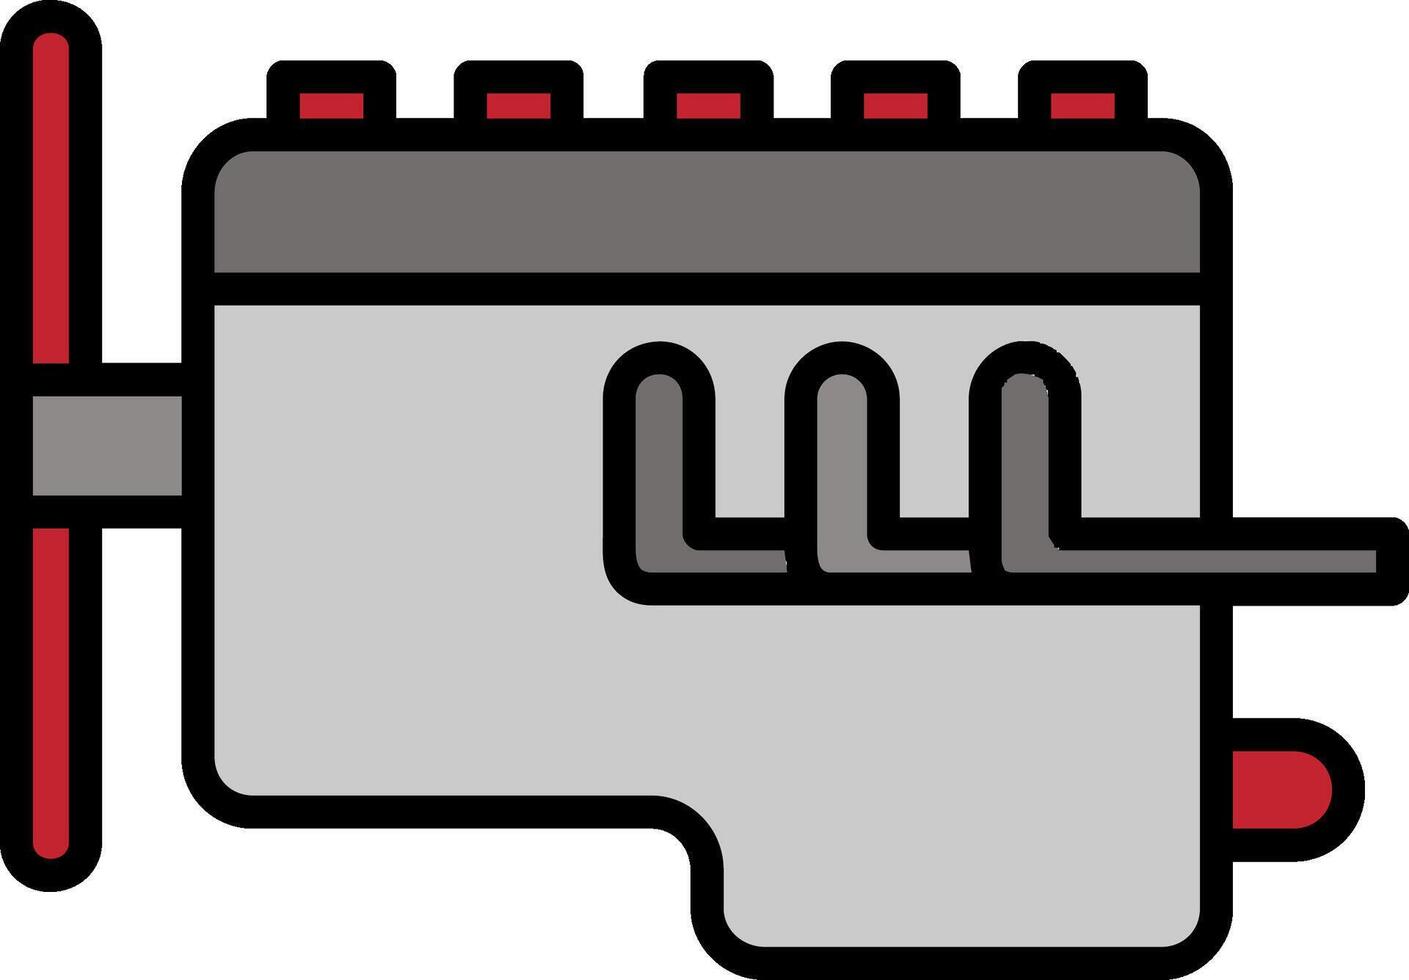 pictogram gevuld met motorlijn vector